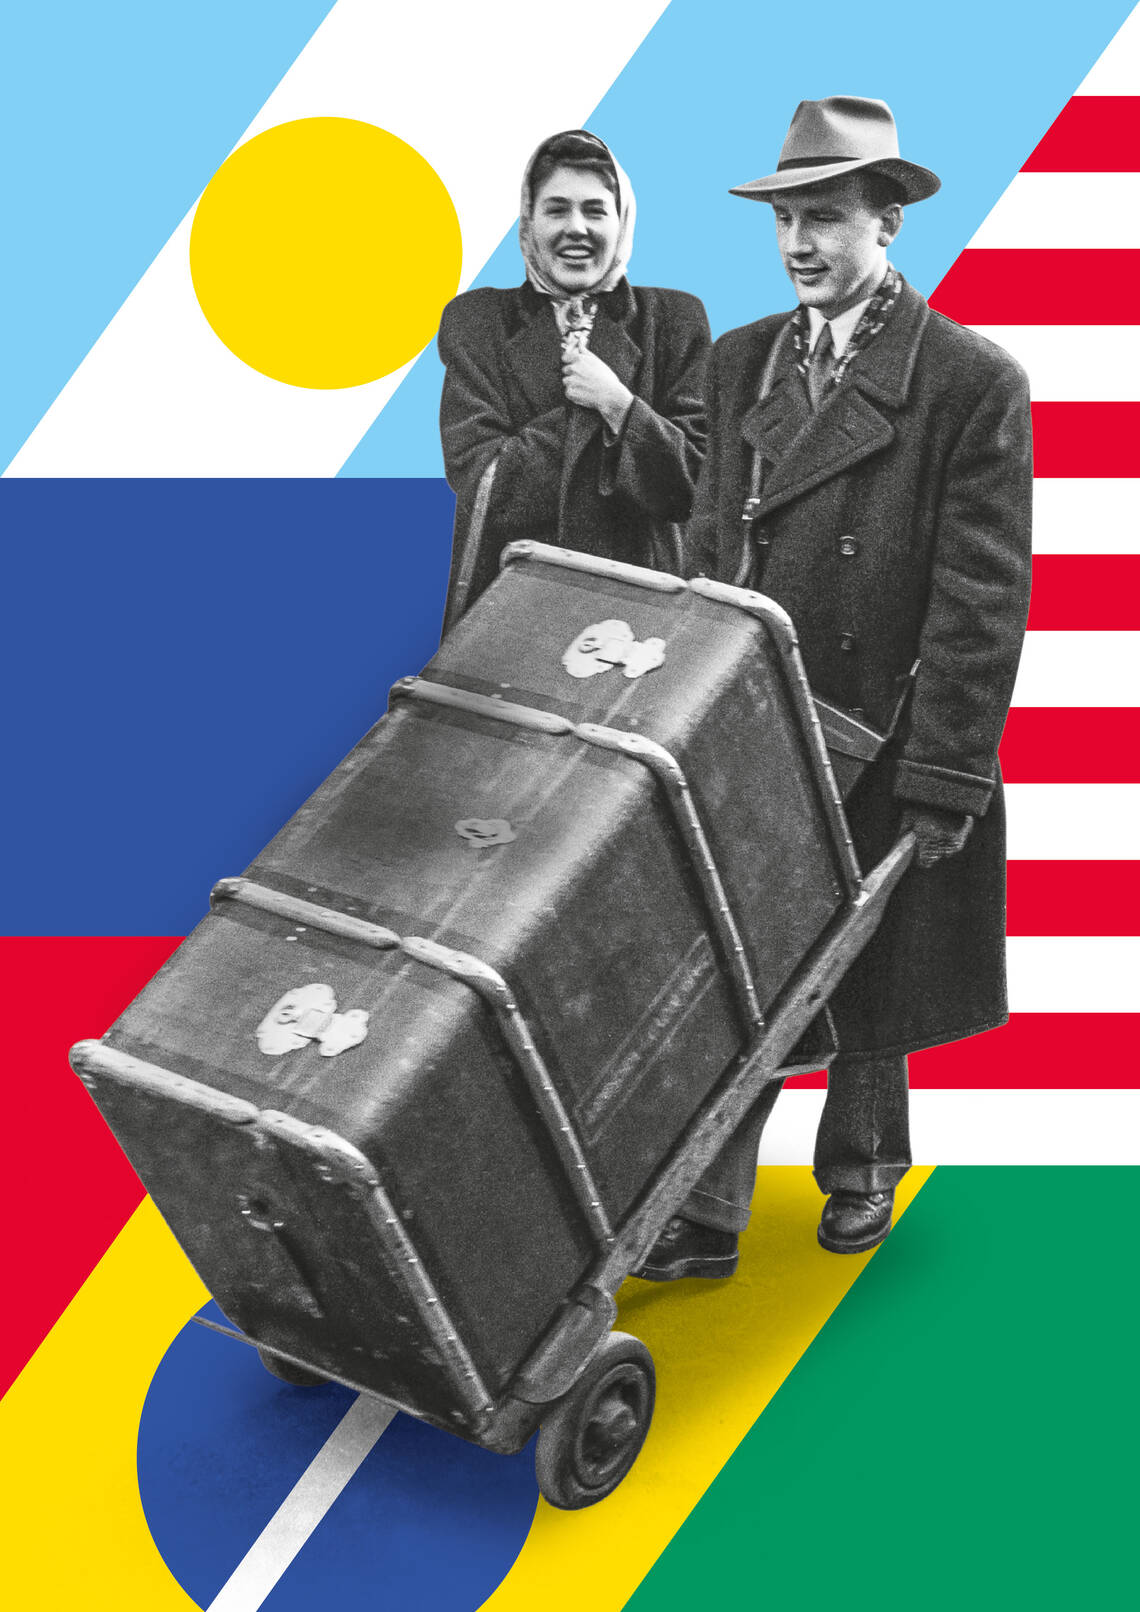 Keyvisual der Ausstellung "Die Schweiz anderswo" - es zeigt ein Ehepaar, der Mann stösst einen grossen Überseekoffer